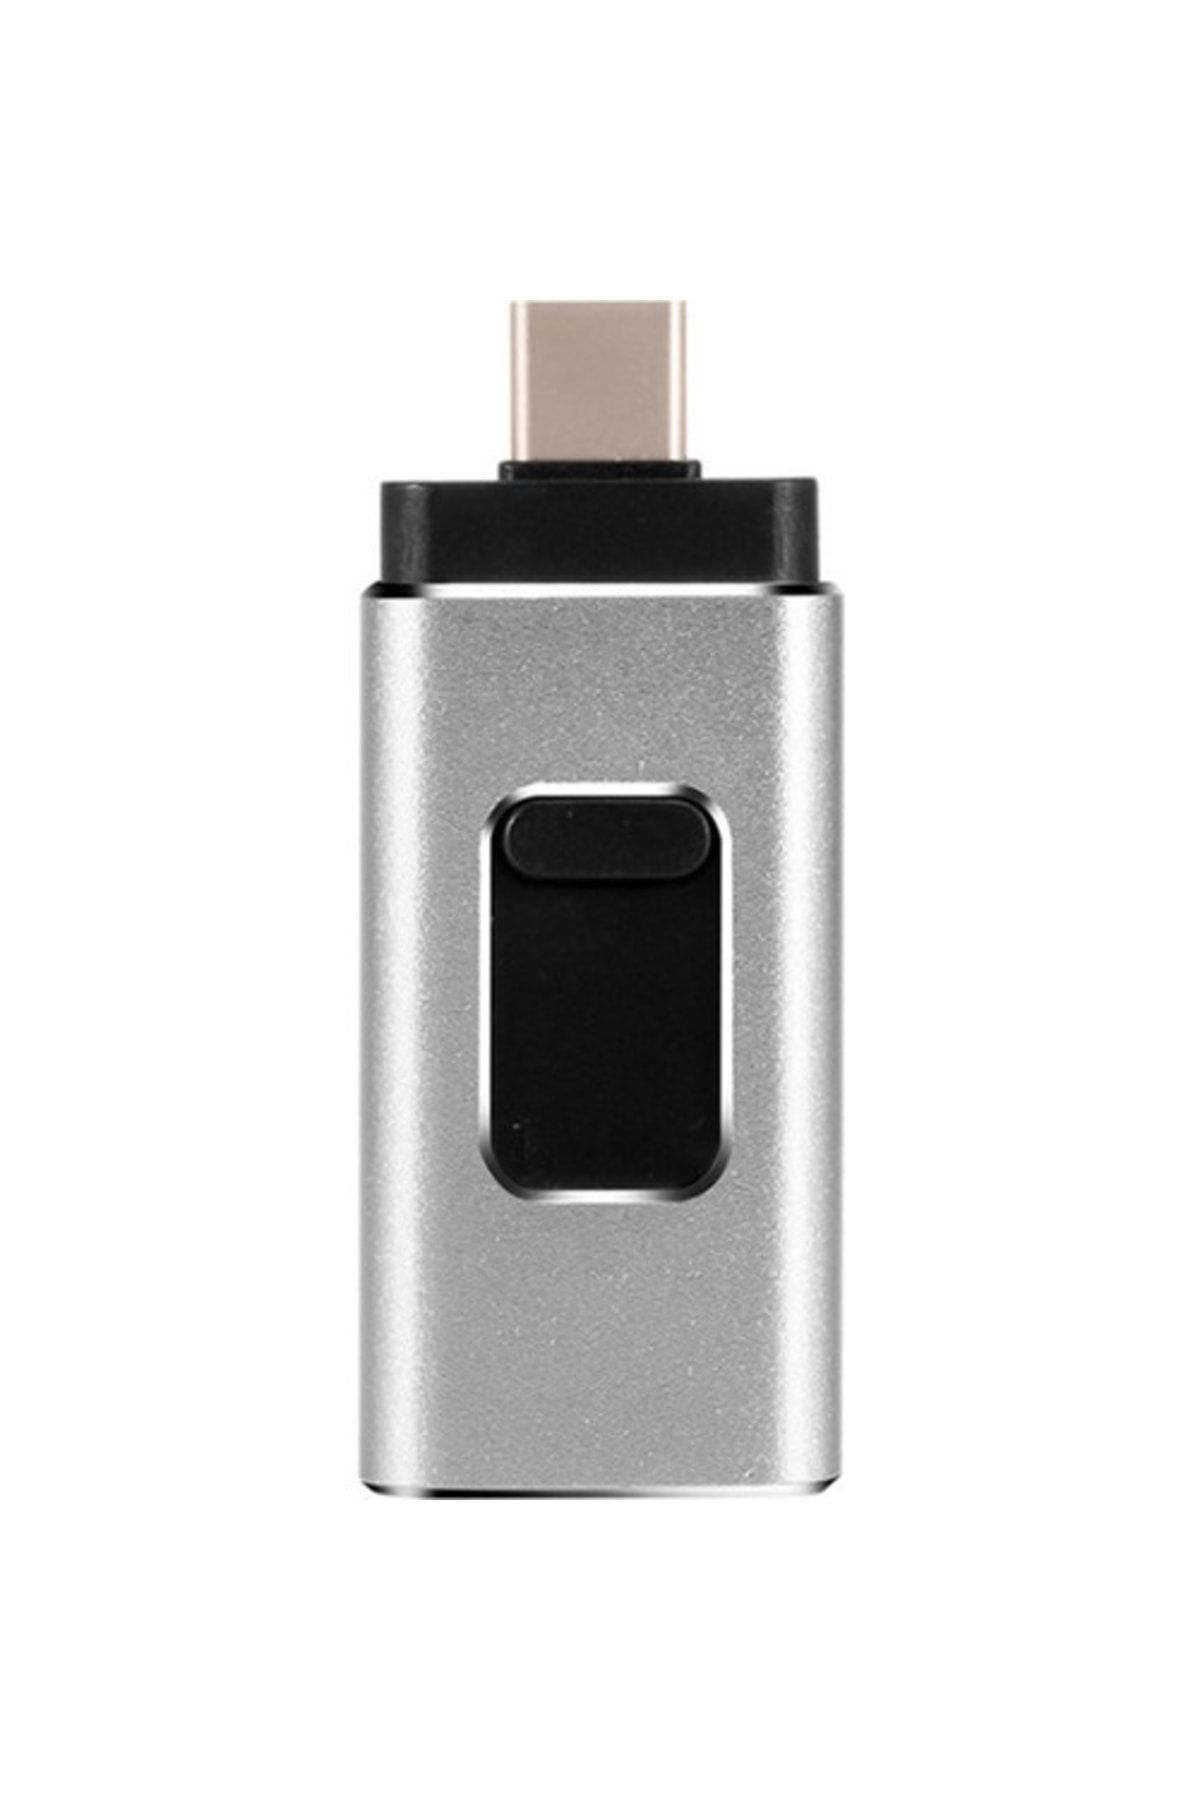 Streak Flash Bellek Iphone Micro Usb Type-c Otg 32gb - Gümüş